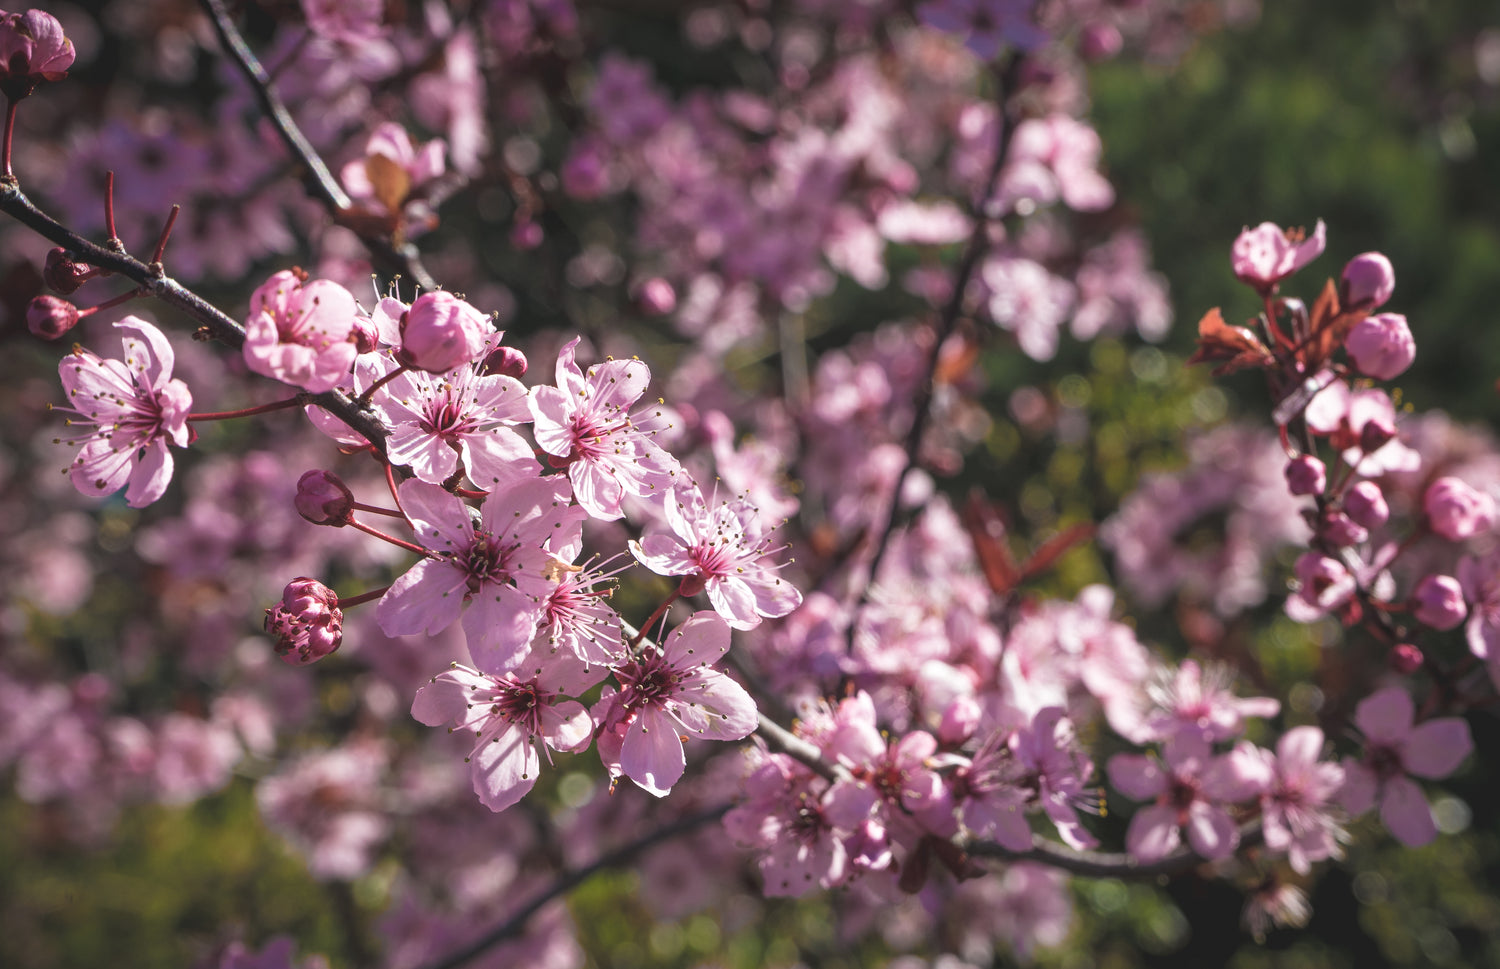 Ein Kirschblütenzweig mit gerade aufgegangenen Blüten in voller Pracht. Im Hintergrund erkennt man unscharf grünes Blattwerk. Der Fokus liegt auf den Kirschblüten